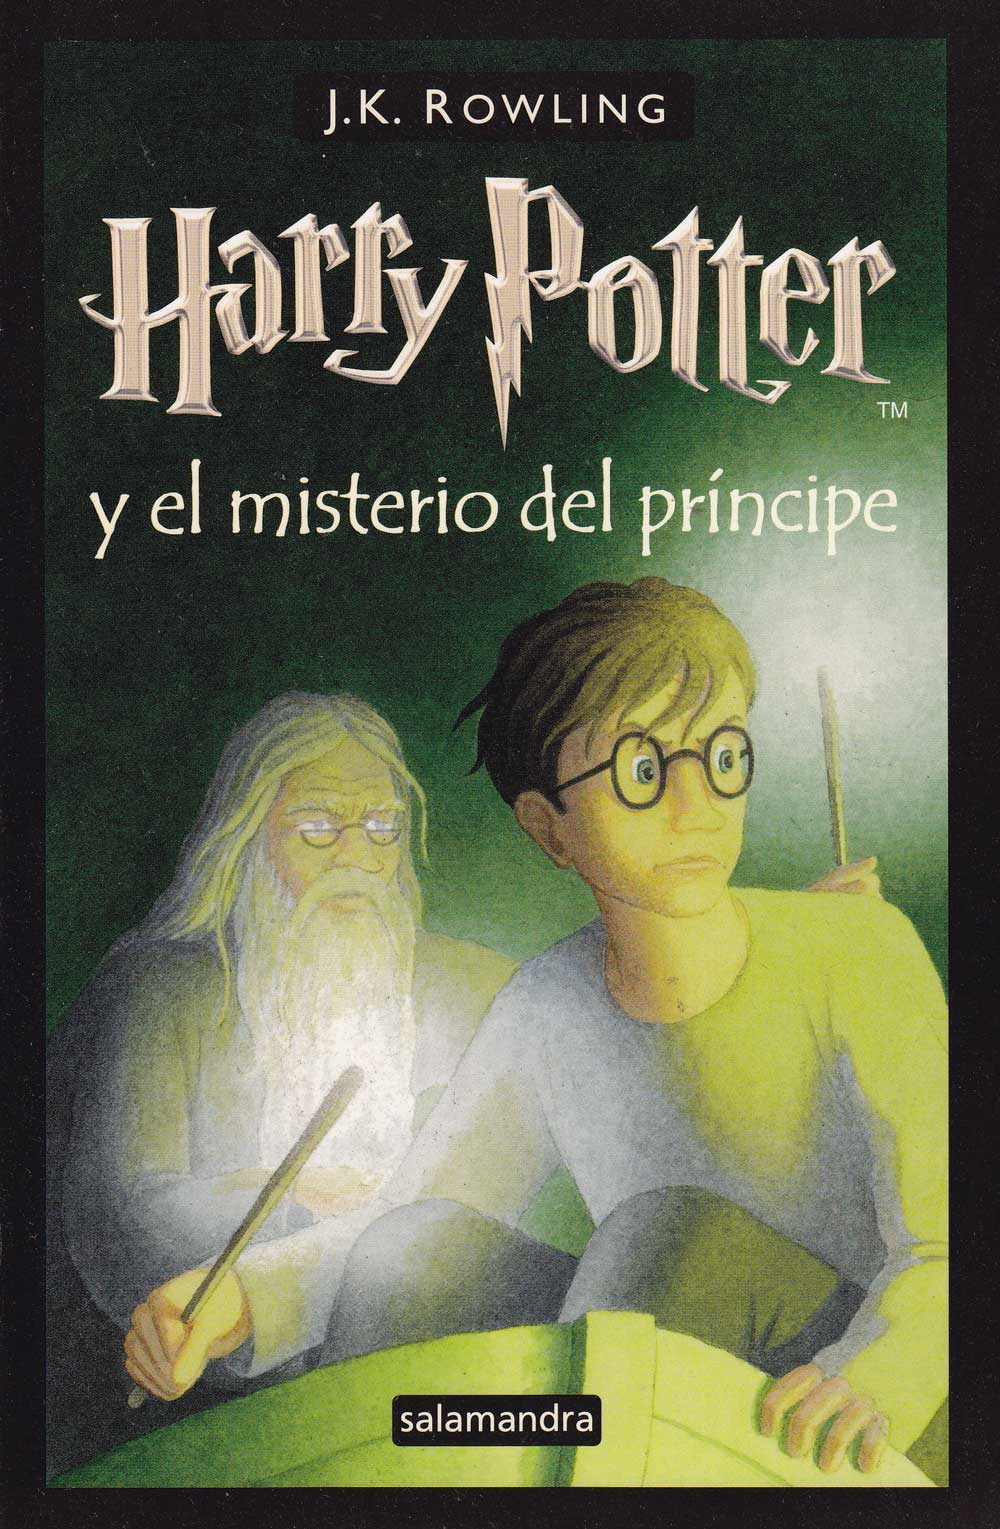 Lista de los títulos de los libros de Harry Potter en otros